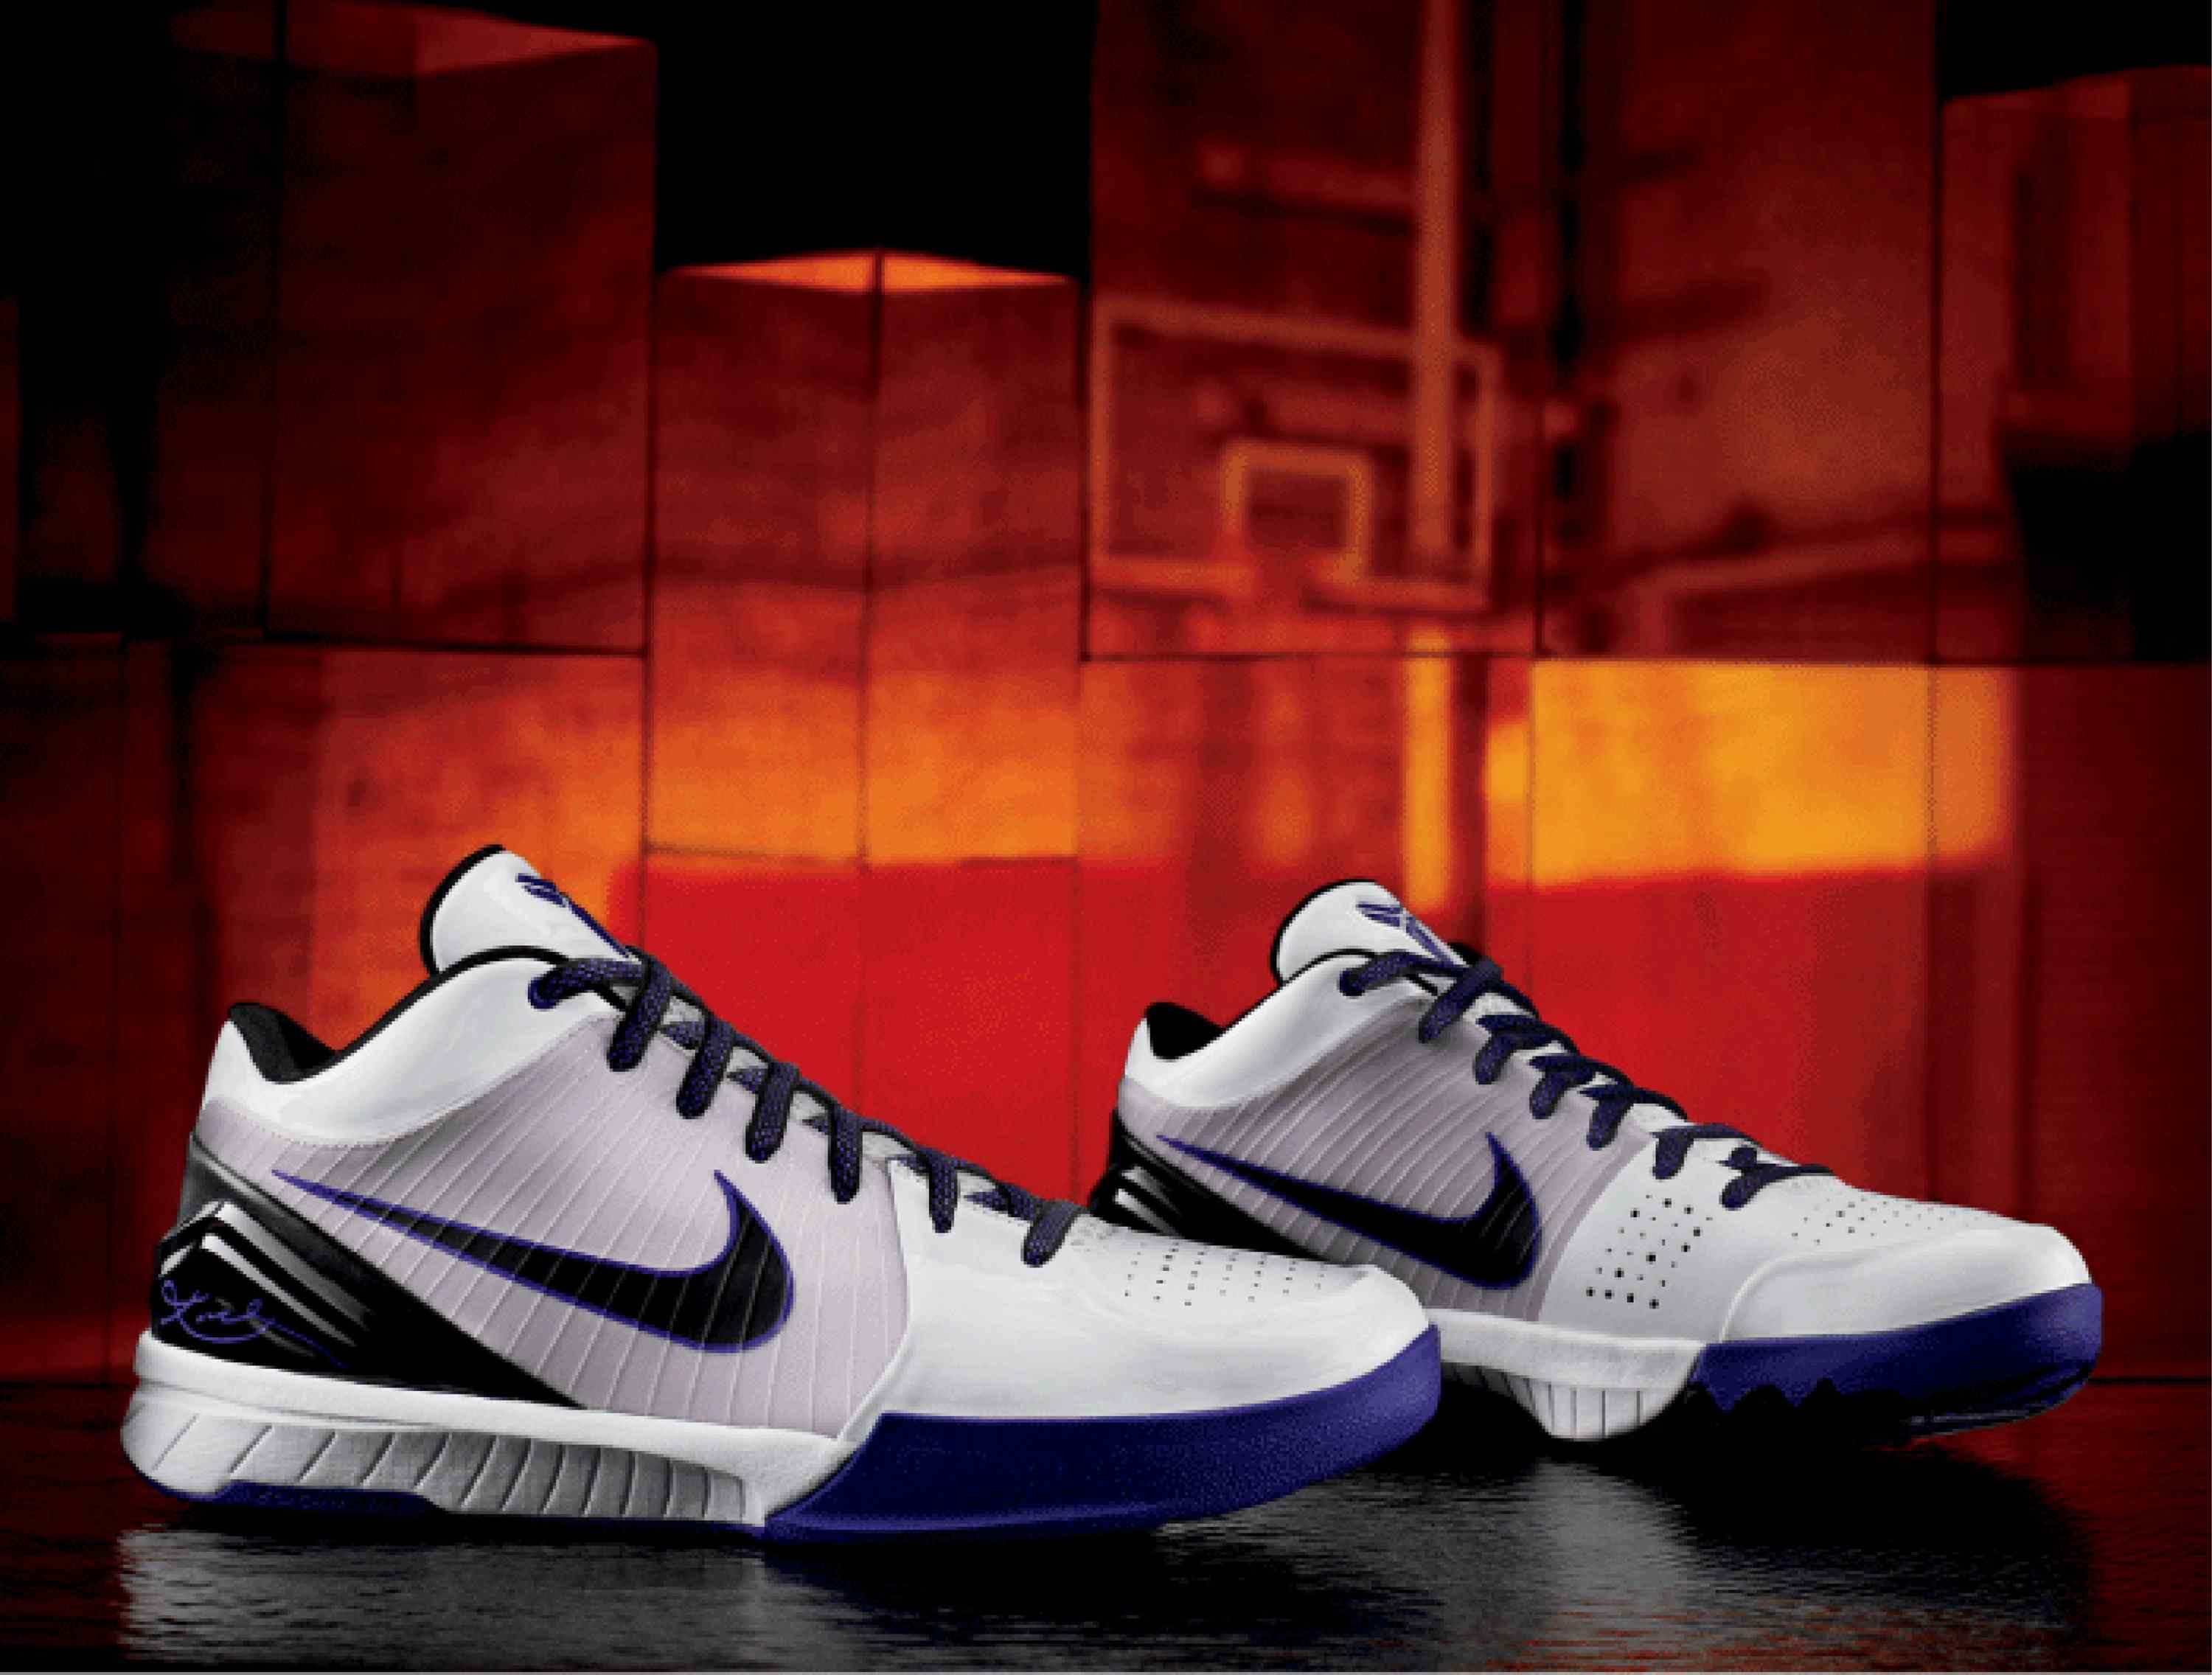 Nike Zoom Kobe IV